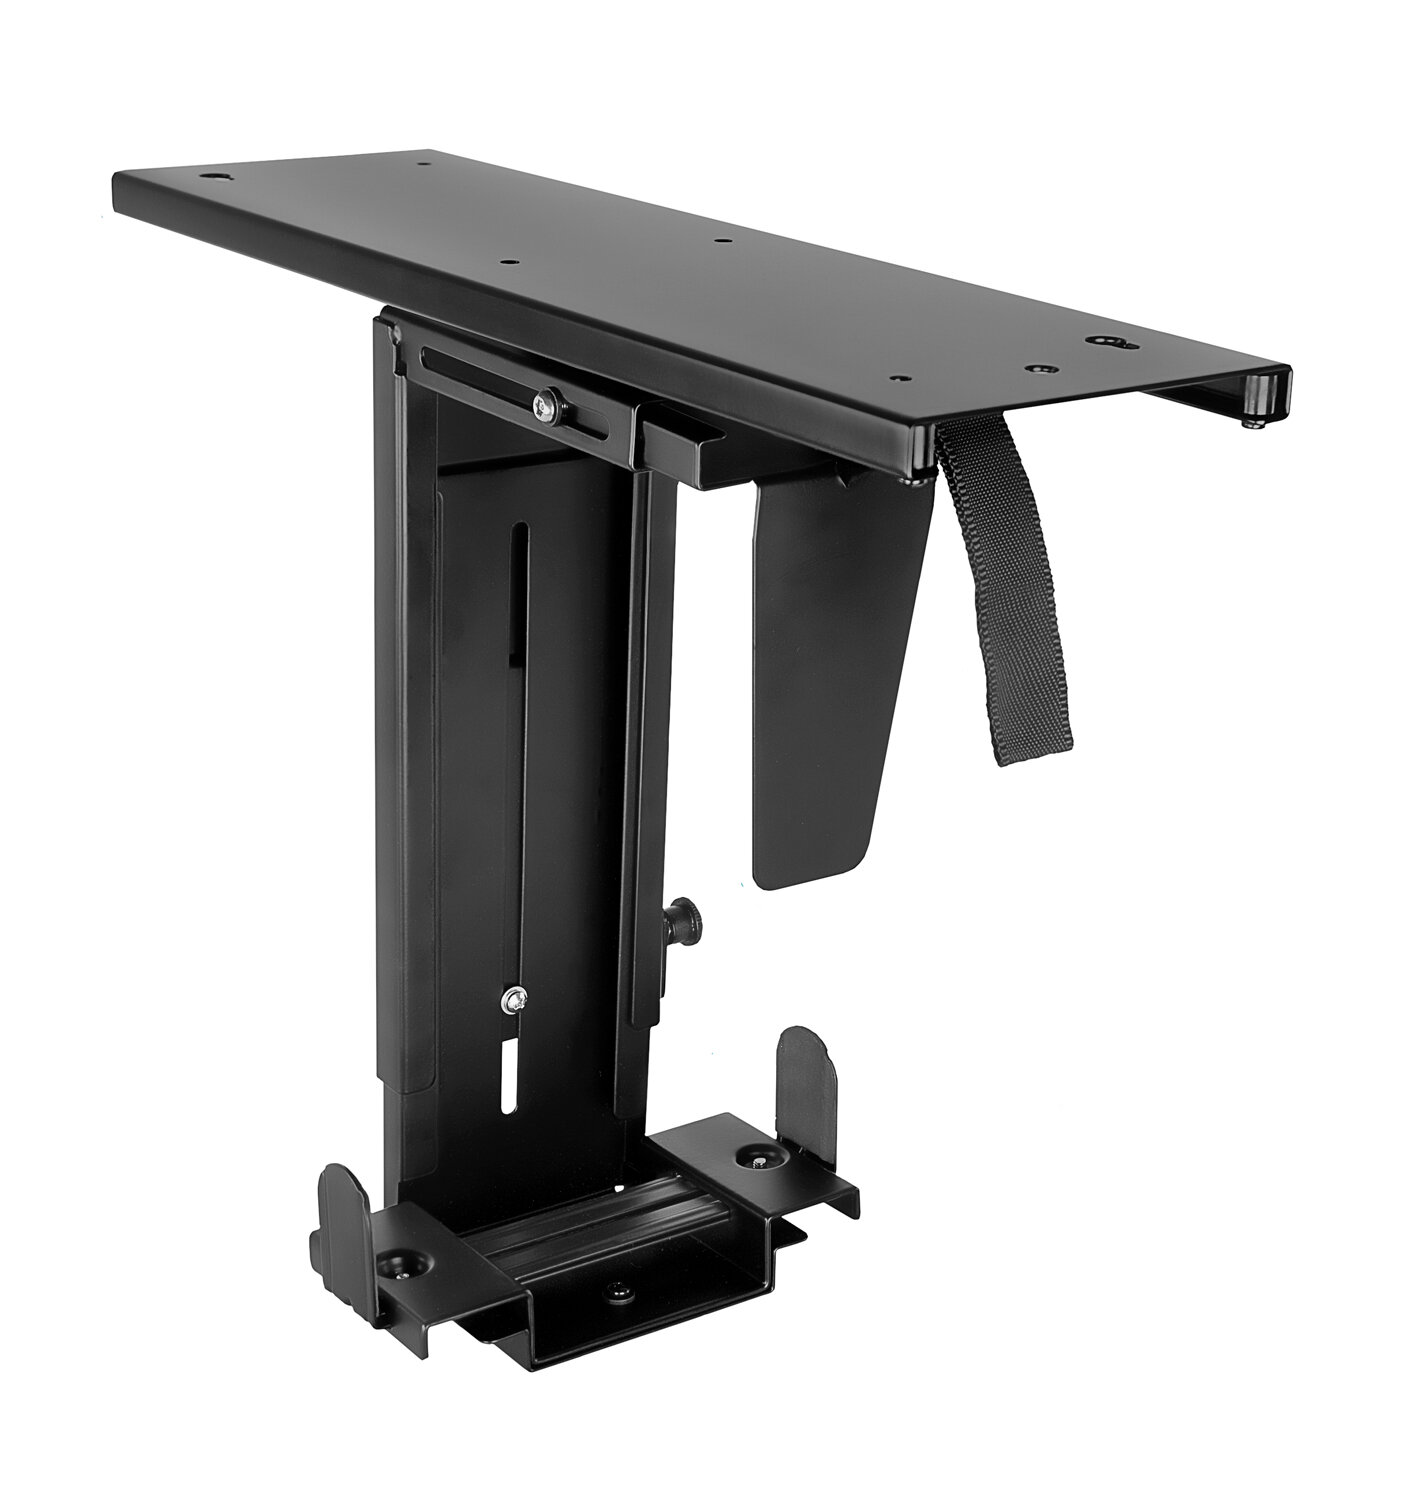 https://assets.wfcdn.com/im/26468529/compr-r85/8949/89495510/mount-it-anti-theft-cpu-holder-desk-mount-adjustable-under-desk-computer-mount-with-sliding-track.jpg